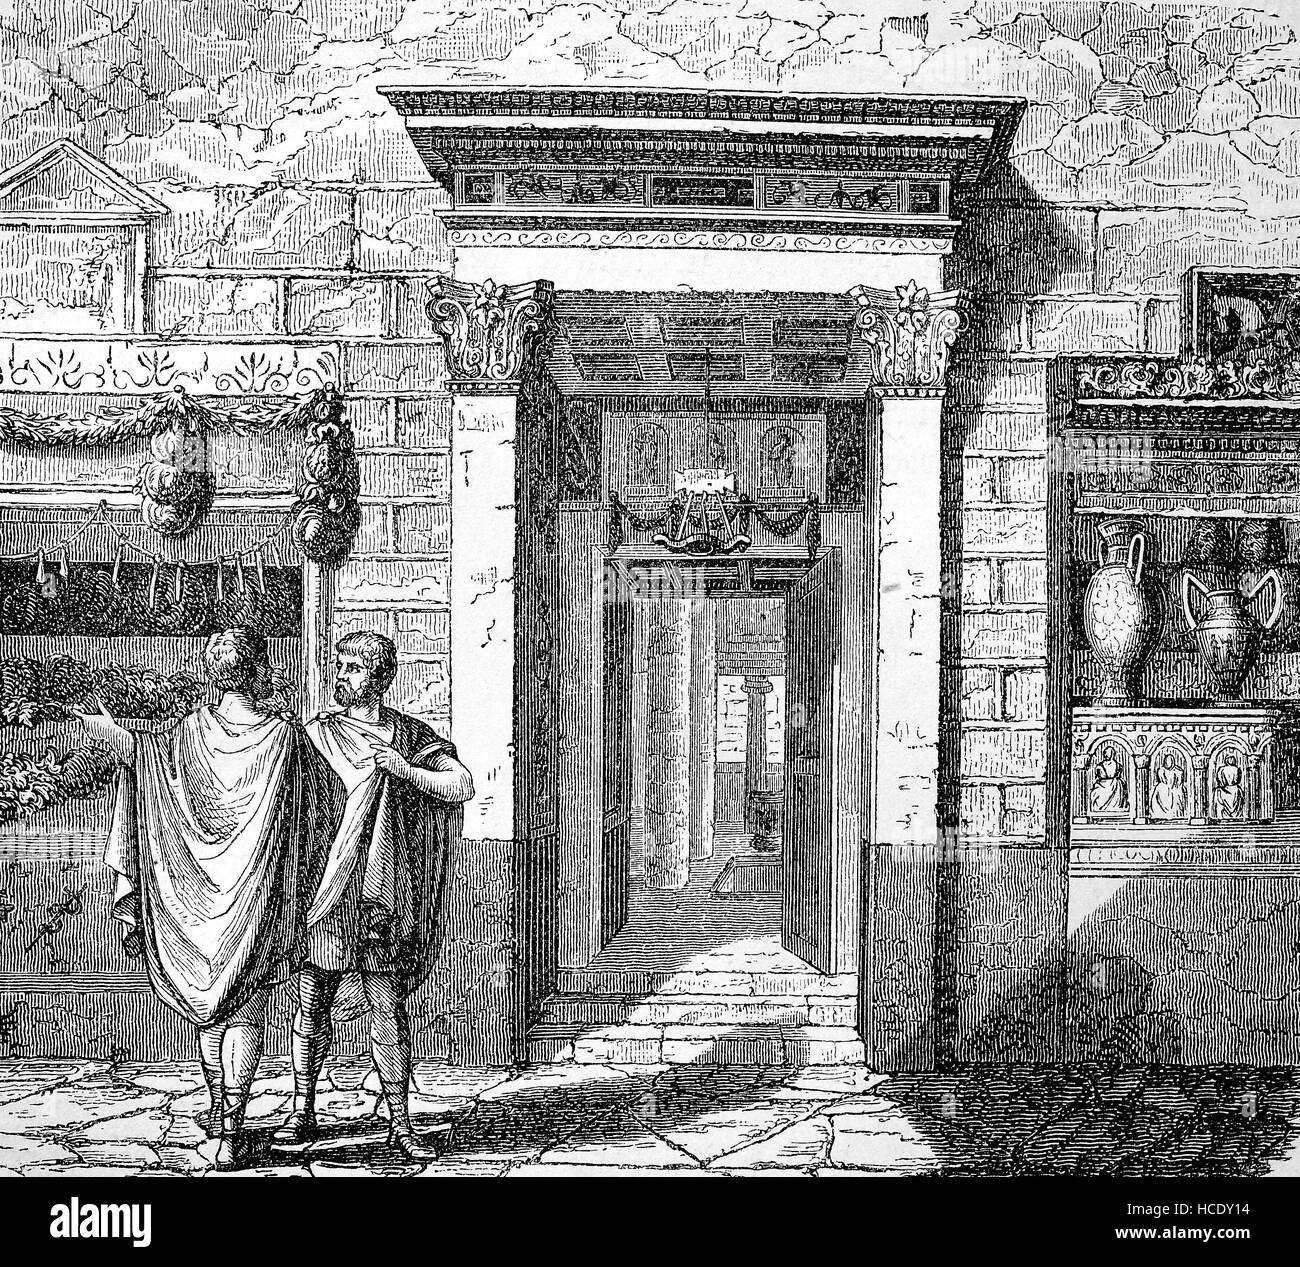 ein altes Haus in der Stadt Pompeji, Pompey, Italien, das Haus des Gaius Vibius Pansa Caetronianus, die Geschichte des antiken Rom, Römisches Reich Stockfoto